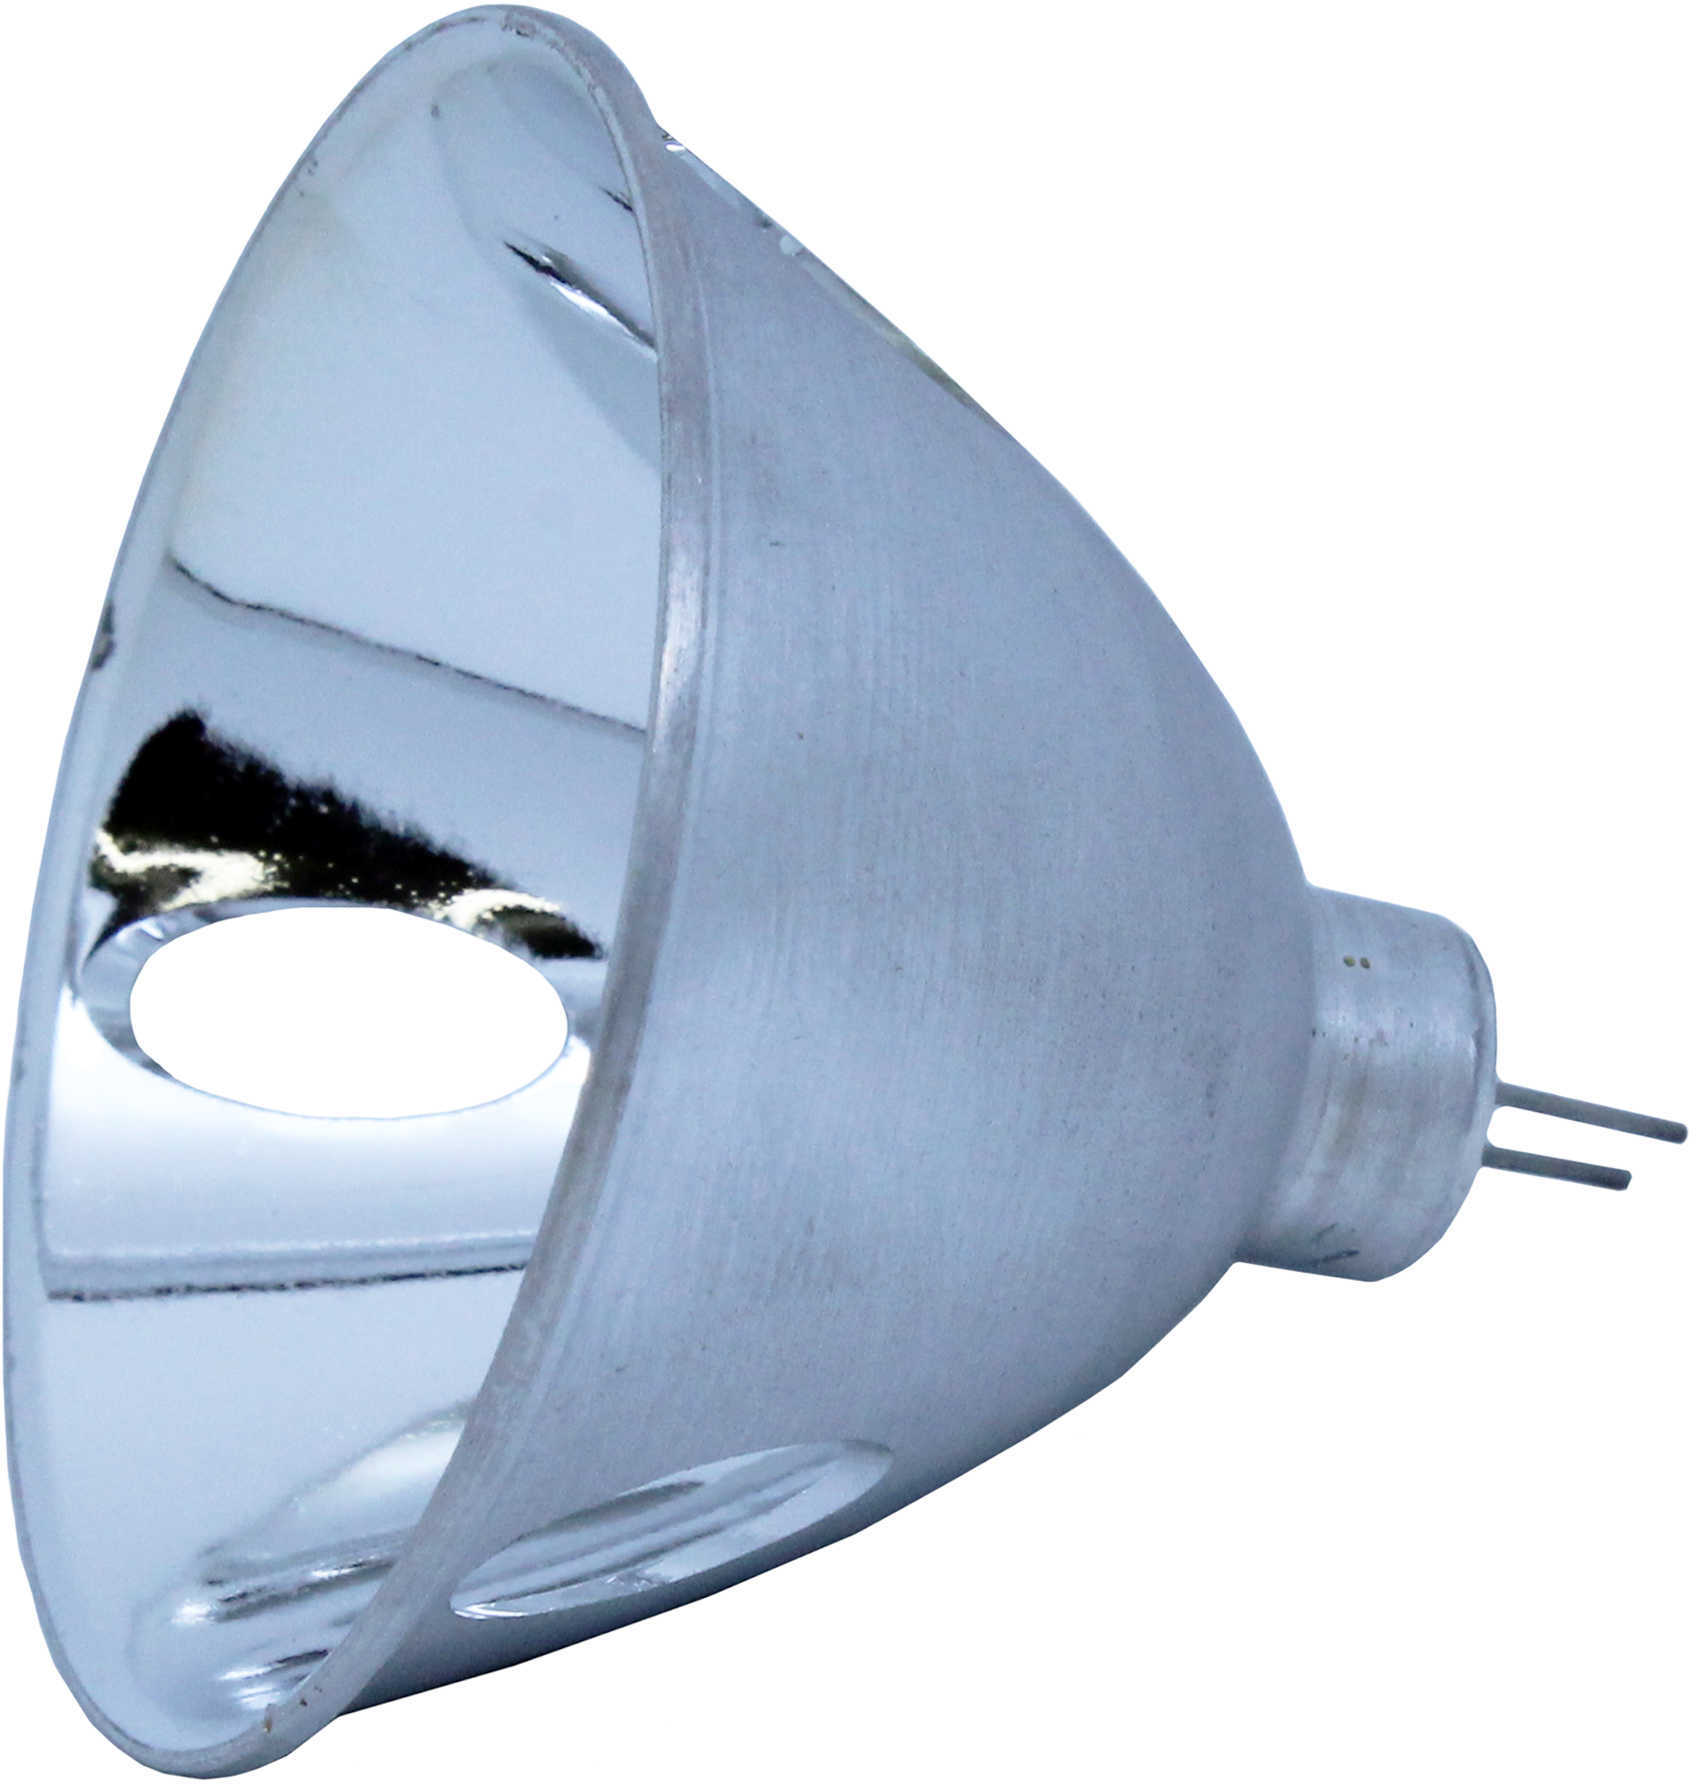 Streamlight Lamp Module Fits: 3C-XP 24003